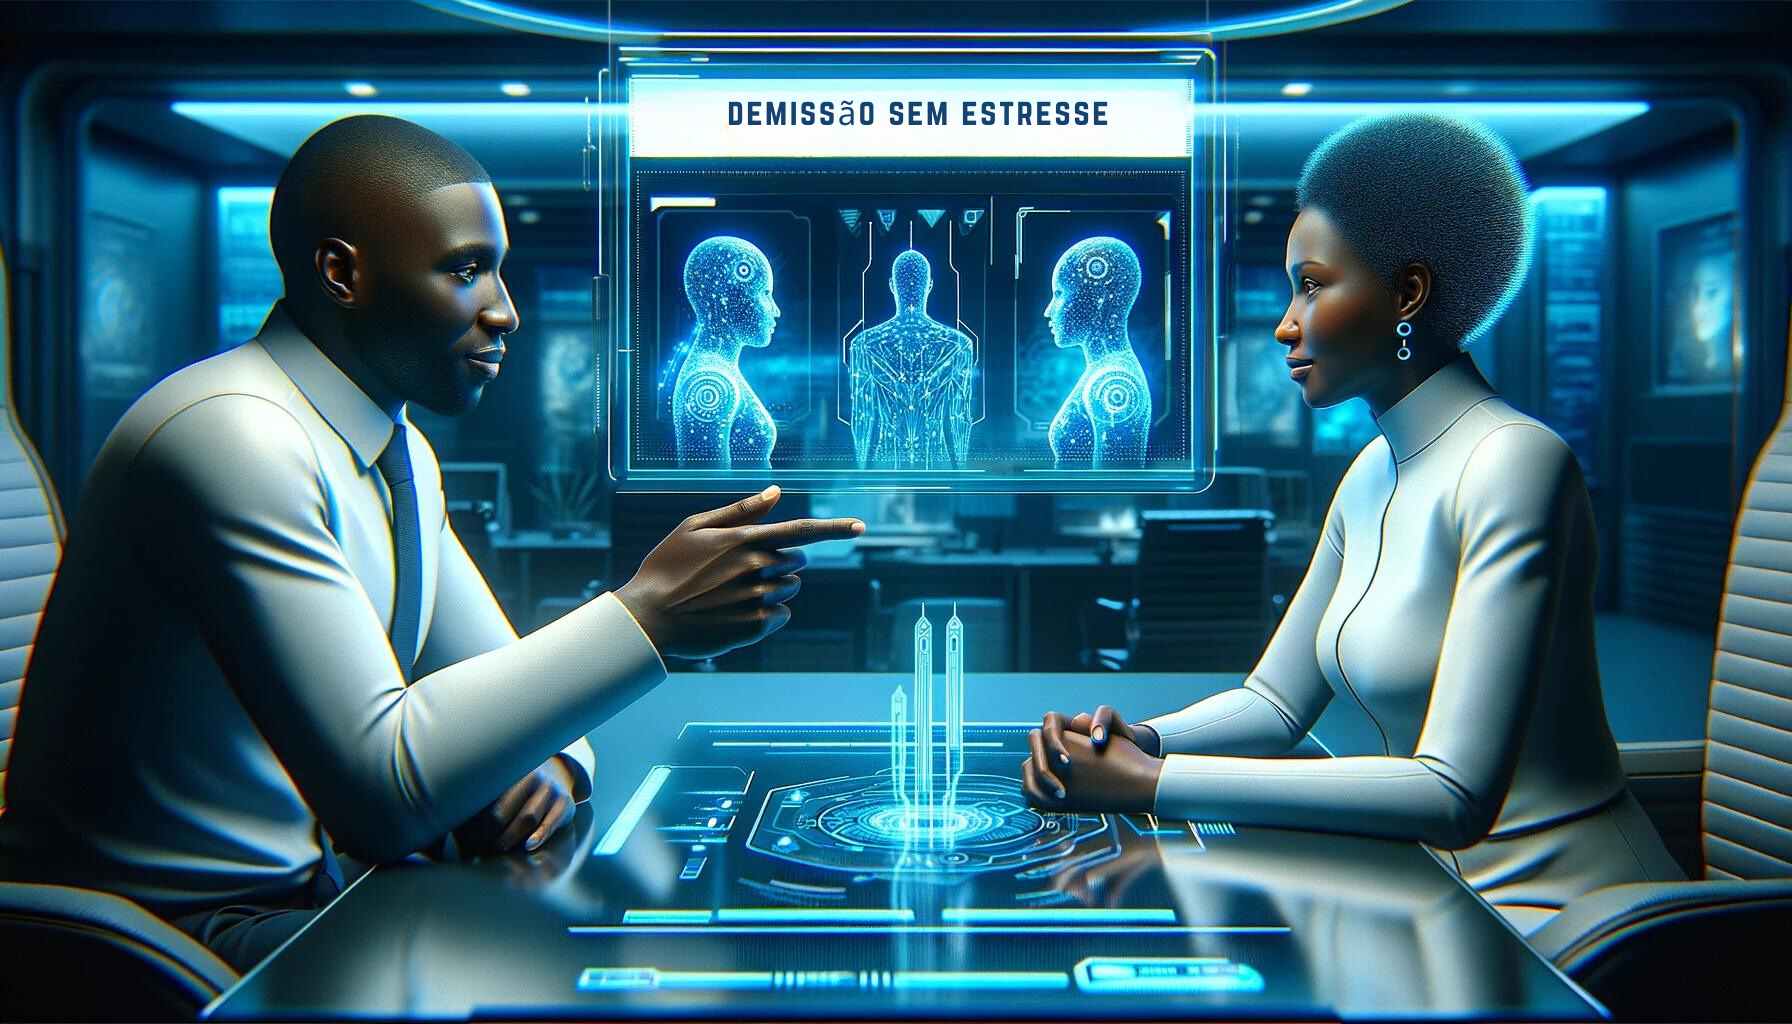 Um homem e uma mulher de ascendência africana conversam calmamente em um escritório de RH futurista, discutindo estratégias para uma demissão sem pesadelos, com interfaces digitais ao fundo, enfatizando um encerramento positivo.